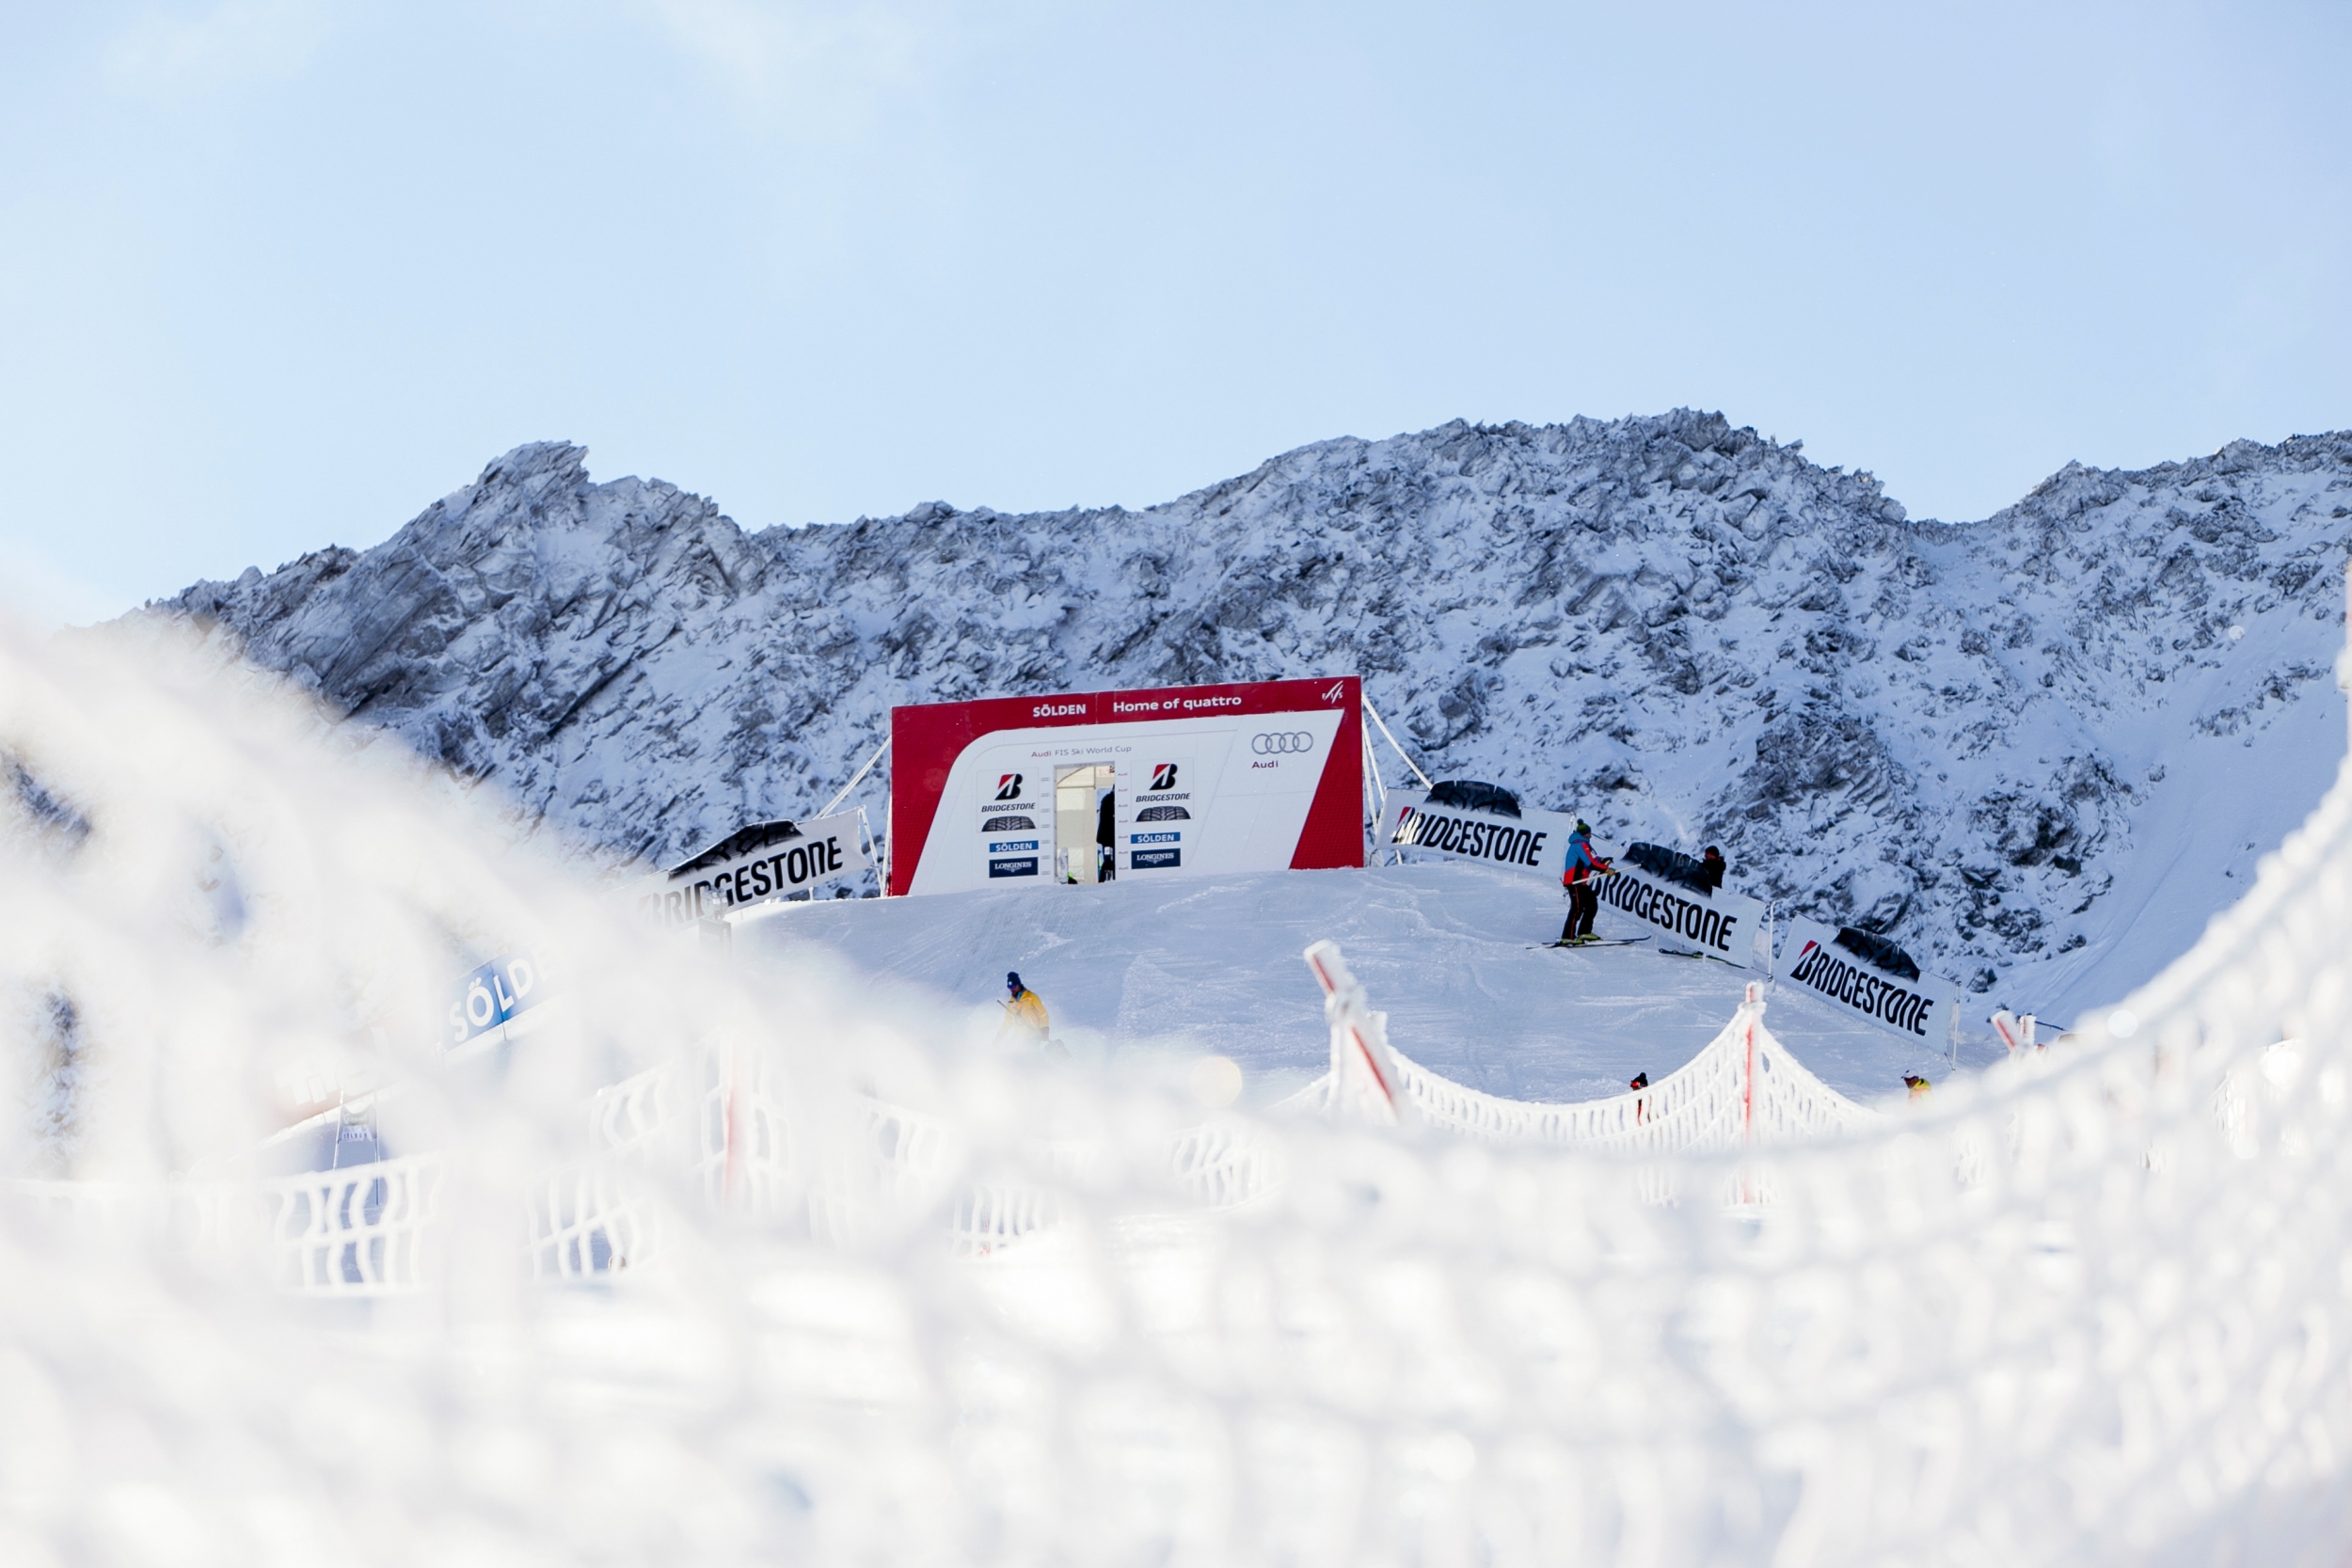 Starthaus FIS Skiweltcup Opening in Sölden